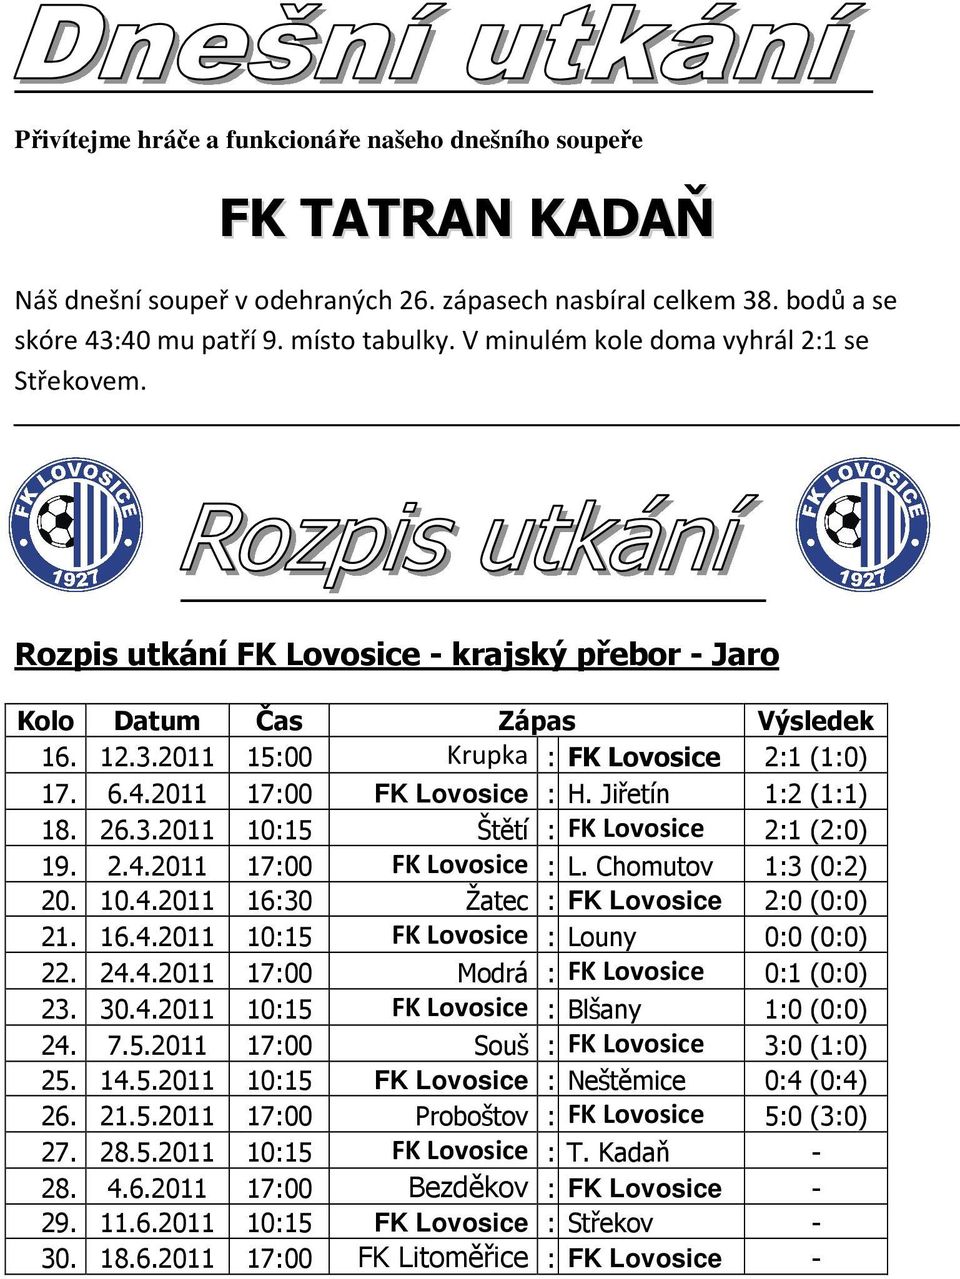 2011 17:00 FK Lovosice : H. Jiřetín 1:2 (1:1) 18. 26.3.2011 10:15 Štětí : FK Lovosice 2:1 (2:0) 19. 2.4.2011 17:00 FK Lovosice : L. Chomutov 1:3 (0:2) 20. 10.4.2011 16:30 Žatec : FK Lovosice 2:0 (0:0) 21.